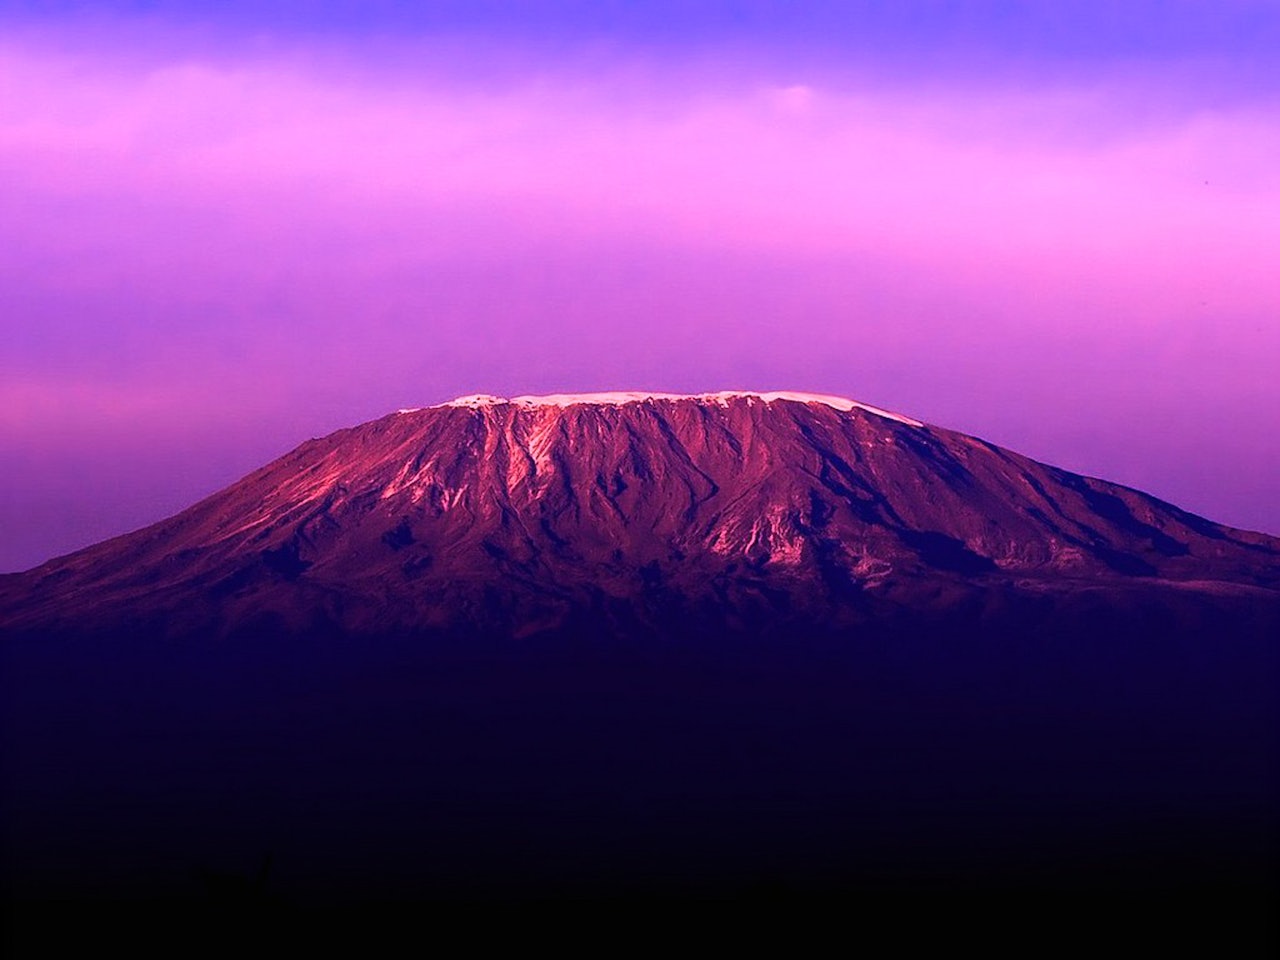 HØYT MÅL: For mange er det en stor drøm å nå toppen av Kilimanjaro. For de fleste er det et oppnåelig mål, men den afrikanske storheten skal ikke undervurderes. 